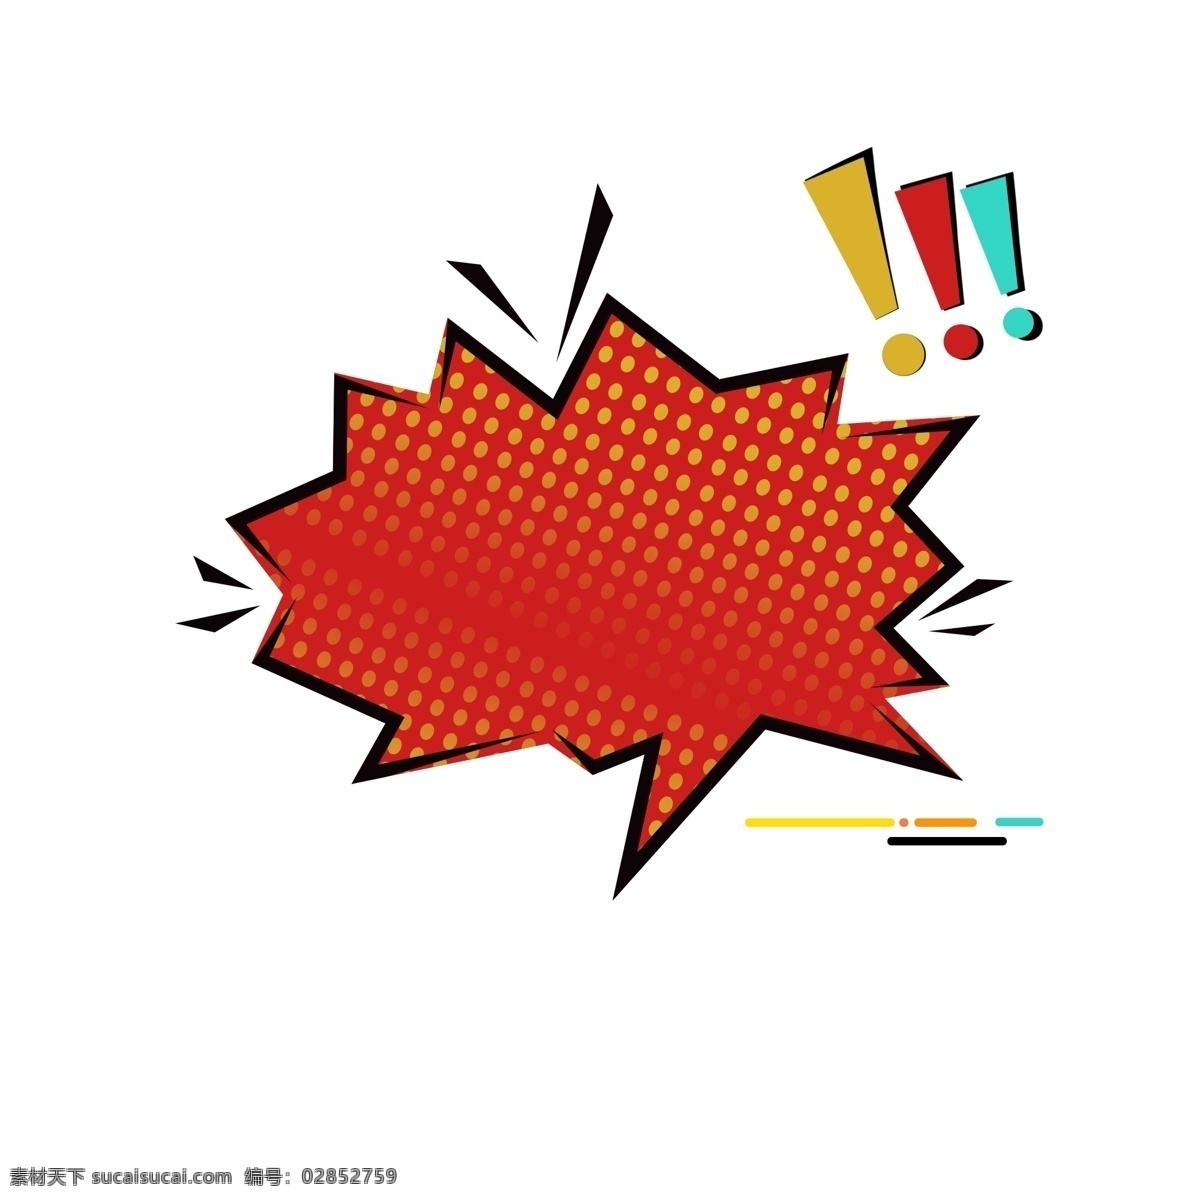 波普 风 红色 爆炸 对话框 元素 商用 几何 线条 形状 爆炸框 波普风 橙色 黑色边框 几何形状 可商用 菱形 菱形渐变 红色爆炸 叹号